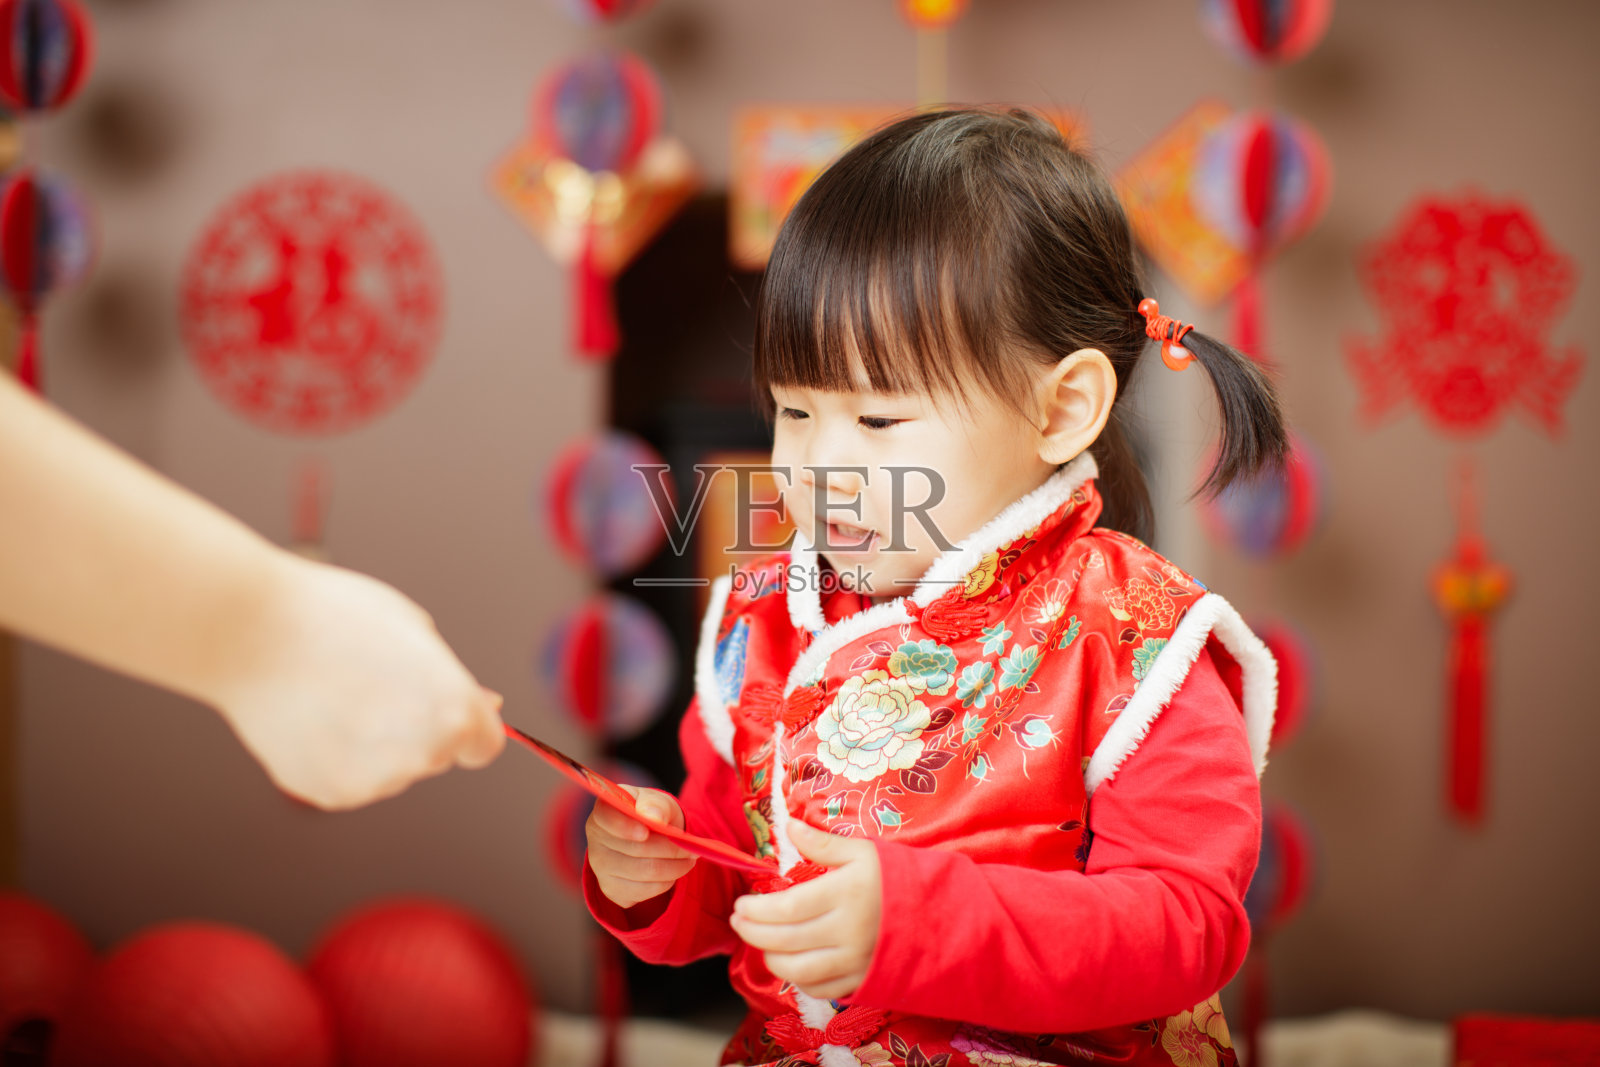 中国女婴传统着装上的“FU”意味着幸运的红包照片摄影图片